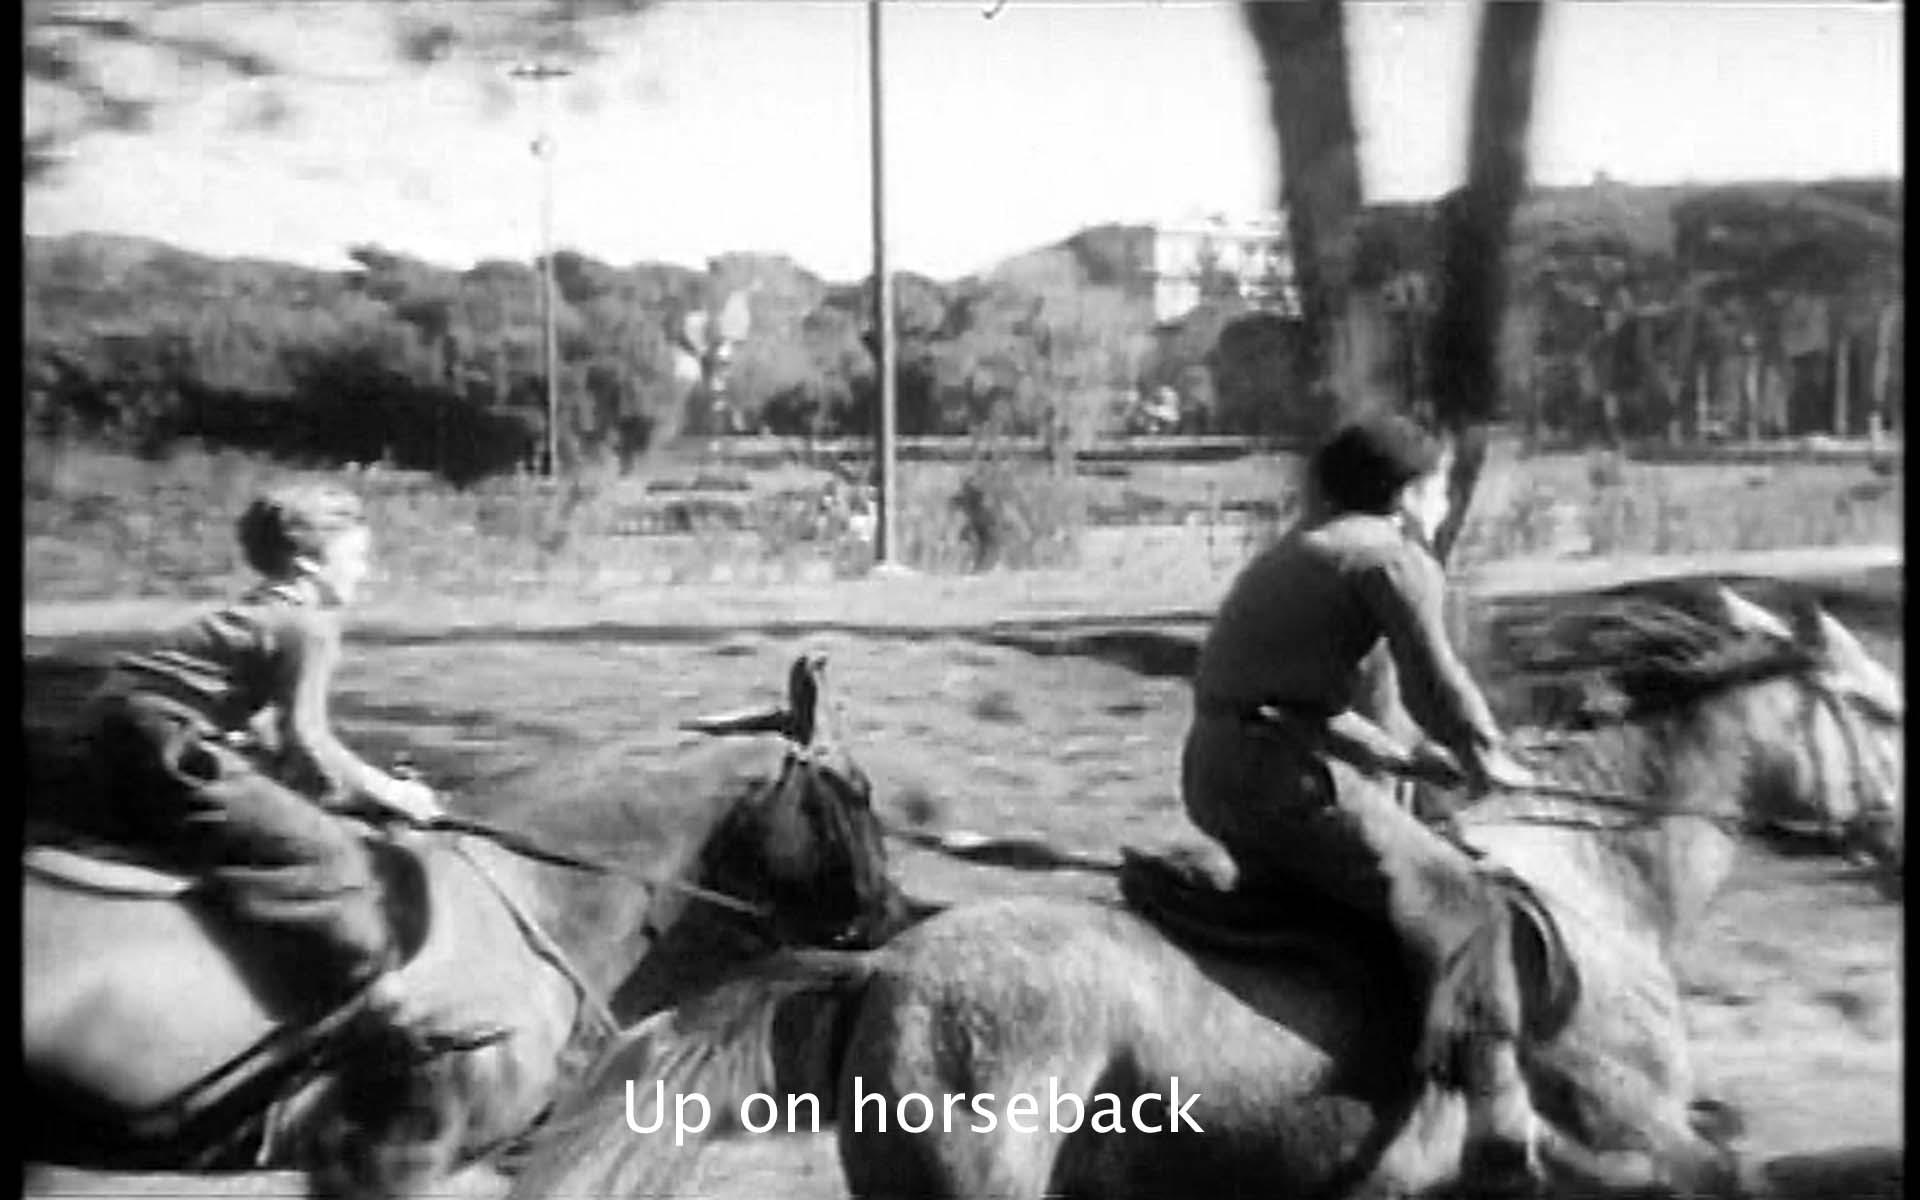 Up on horseback